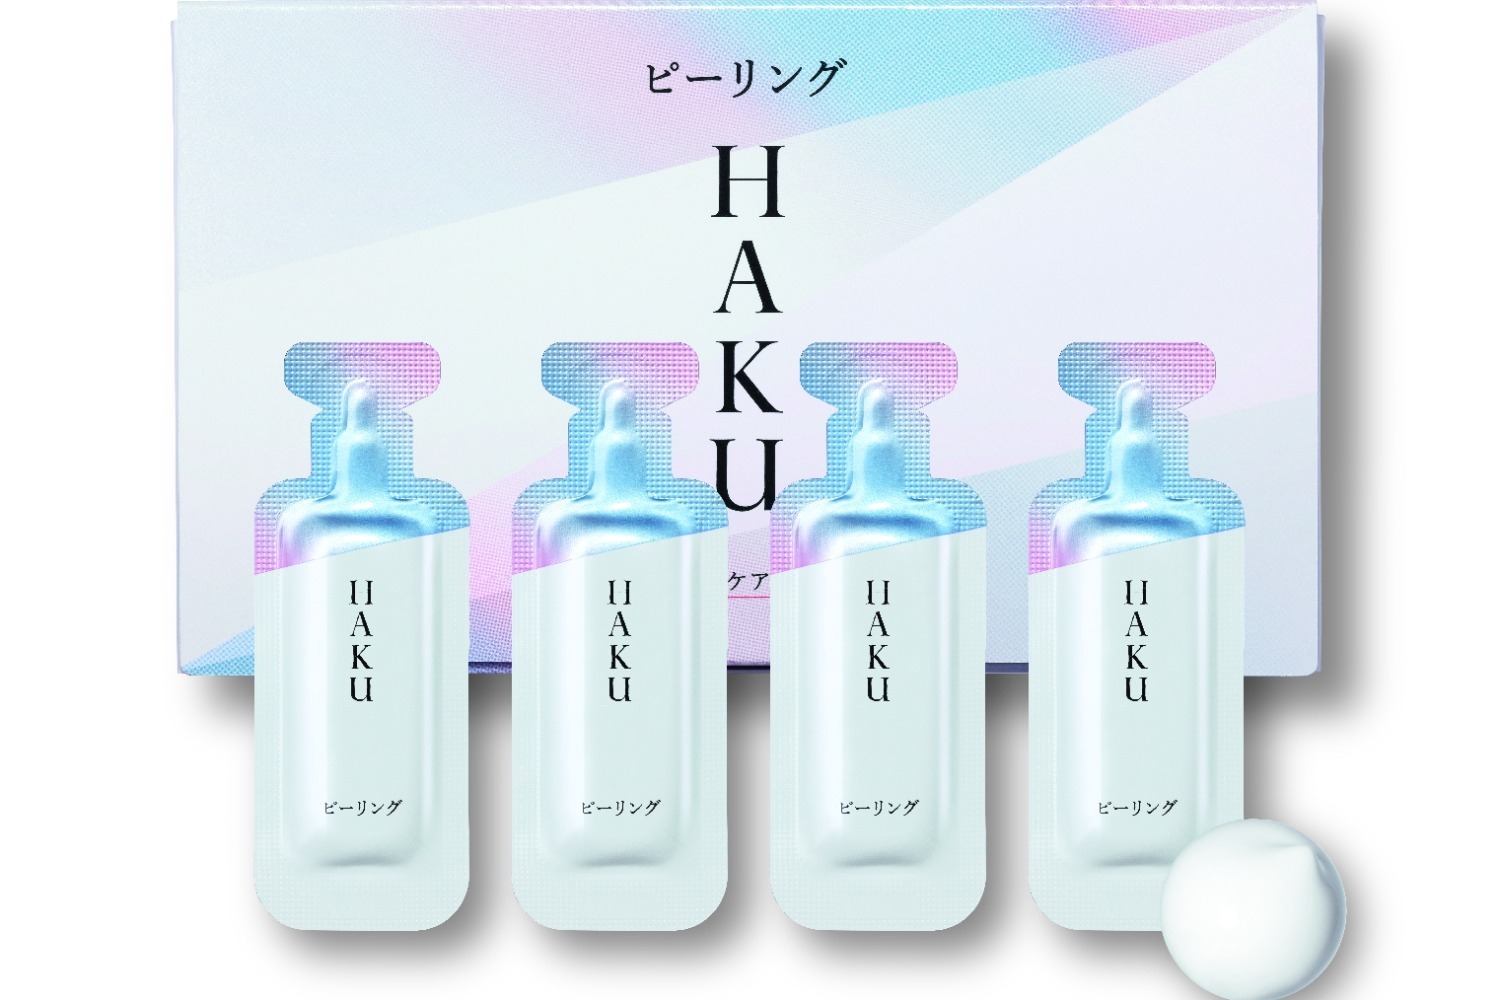 HAKU22年秋スキンケア「HAKU ピーリング」明るく透明感のある肌